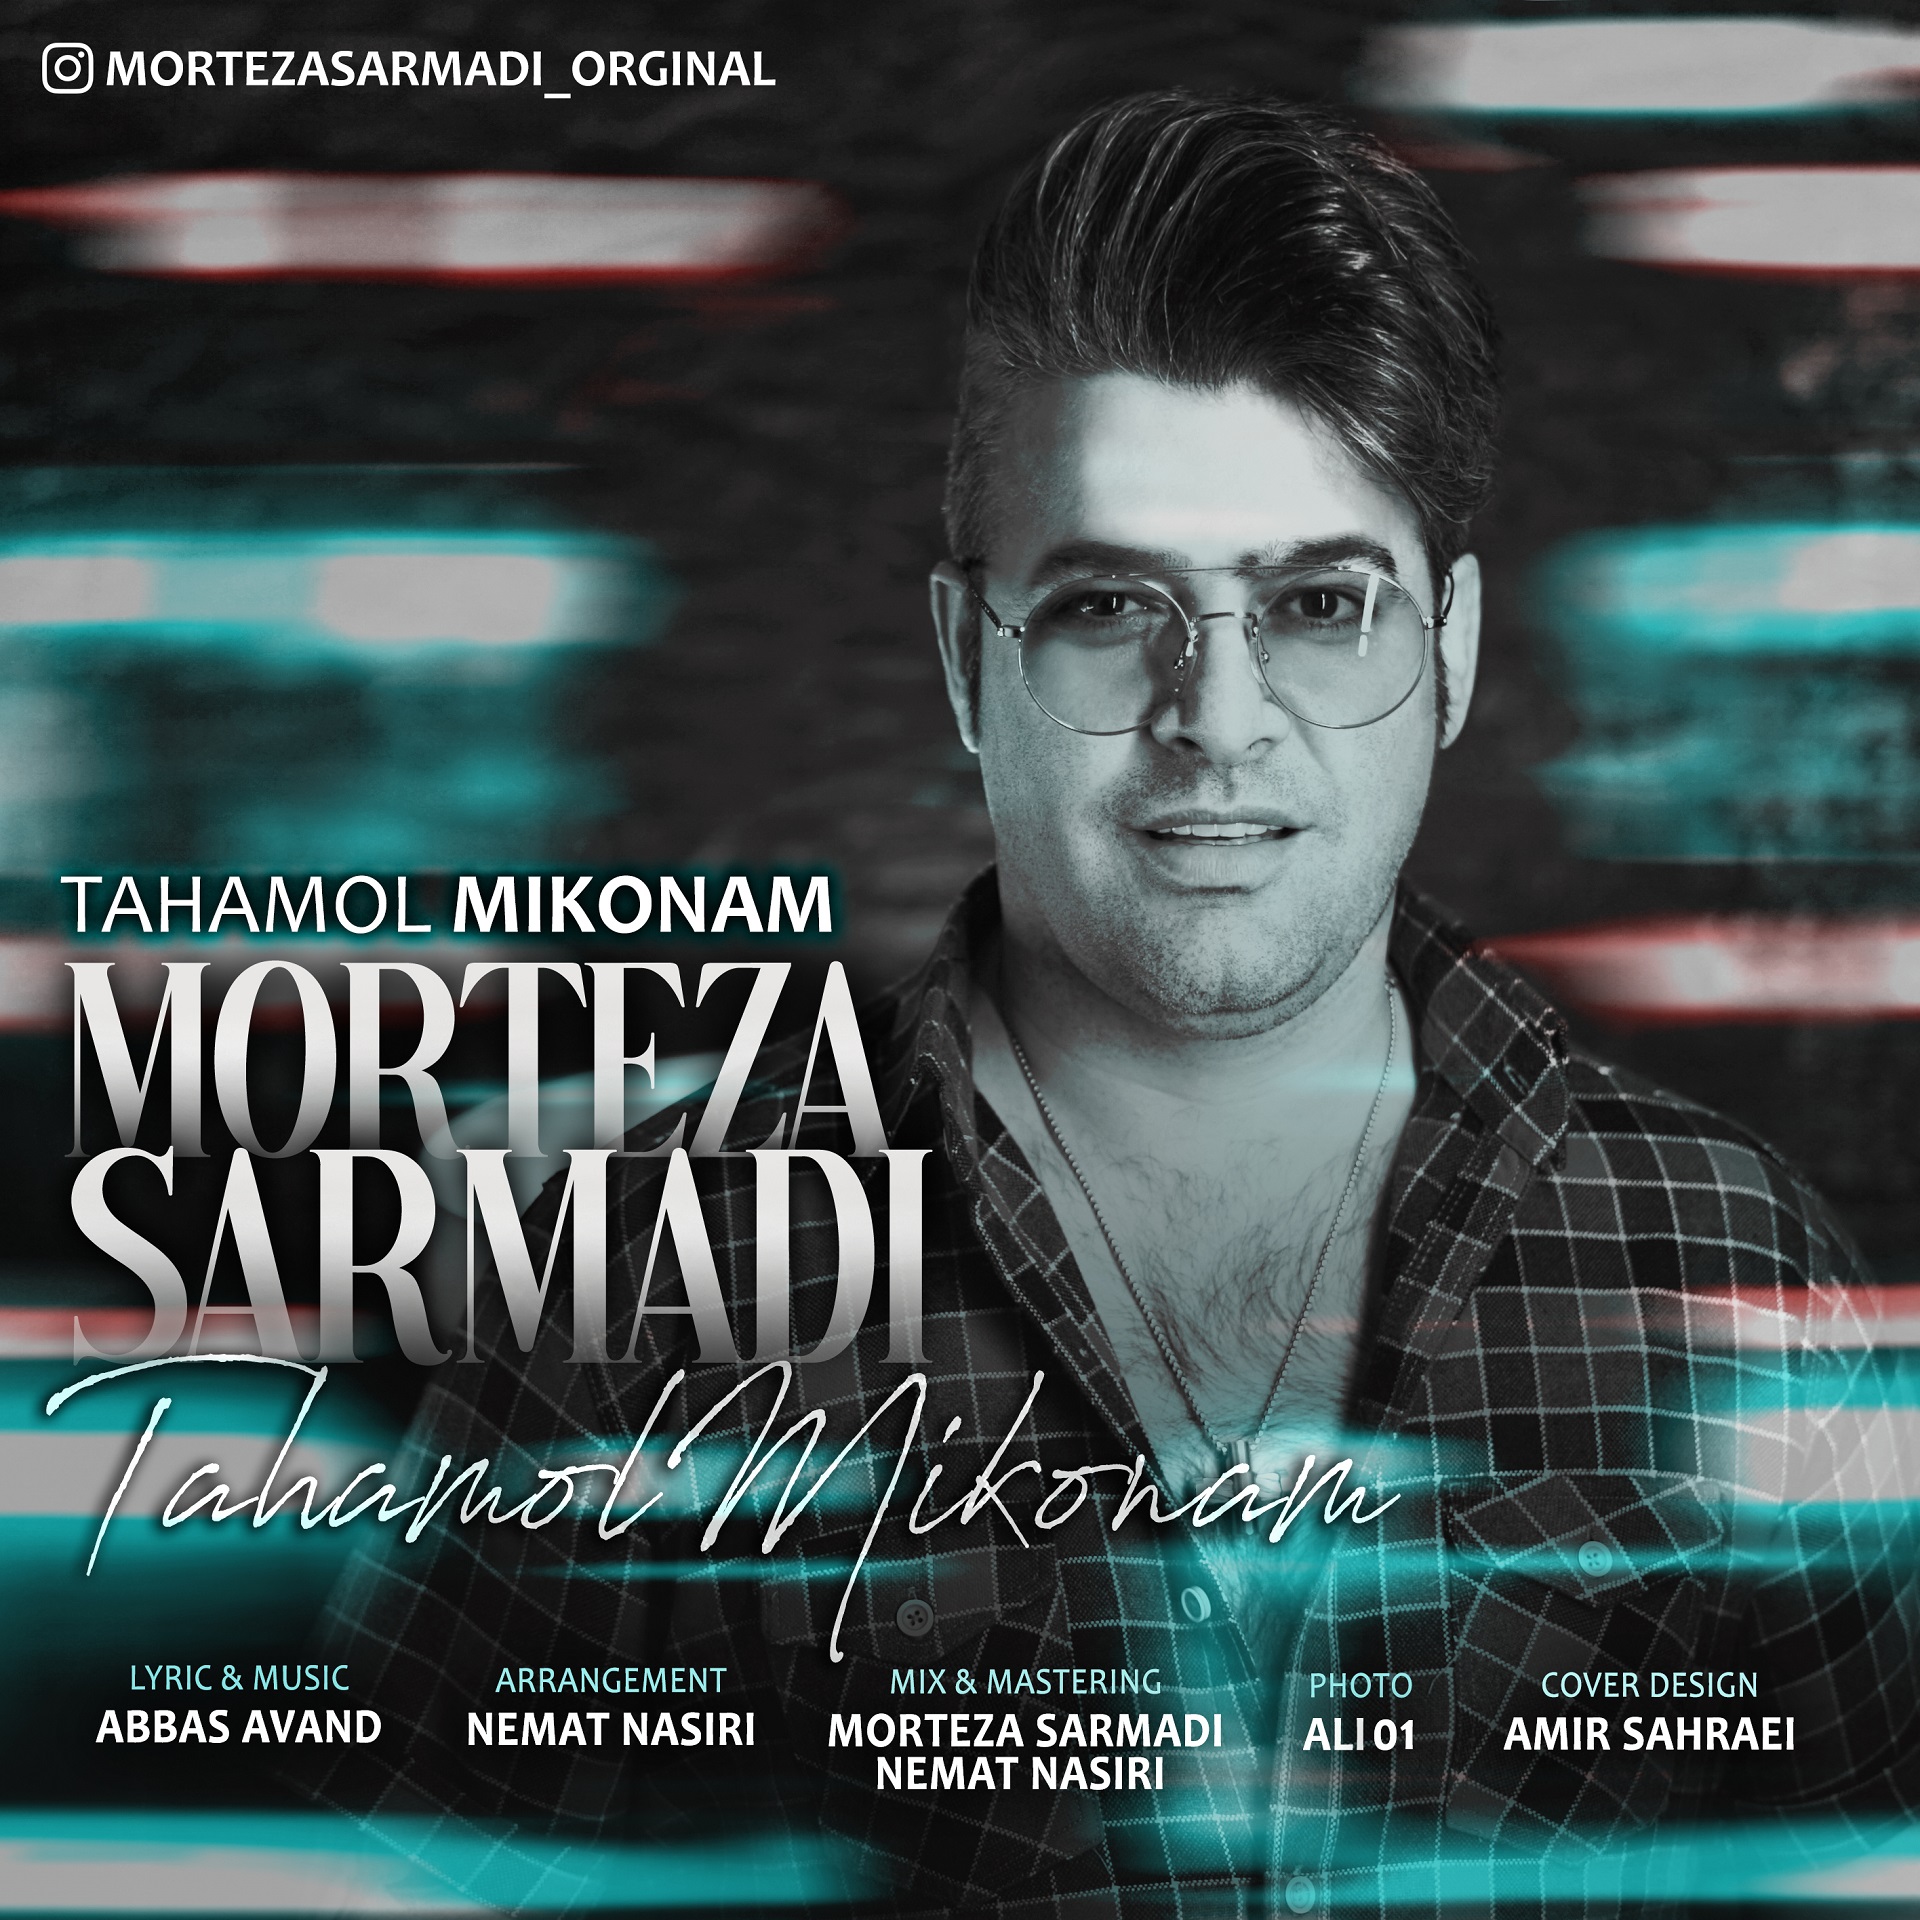  دانلود آهنگ جدید مرتضی سرمدی - تحمل میکنم | Download New Music By Morteza Sarmadi - Tahamol Mikonam